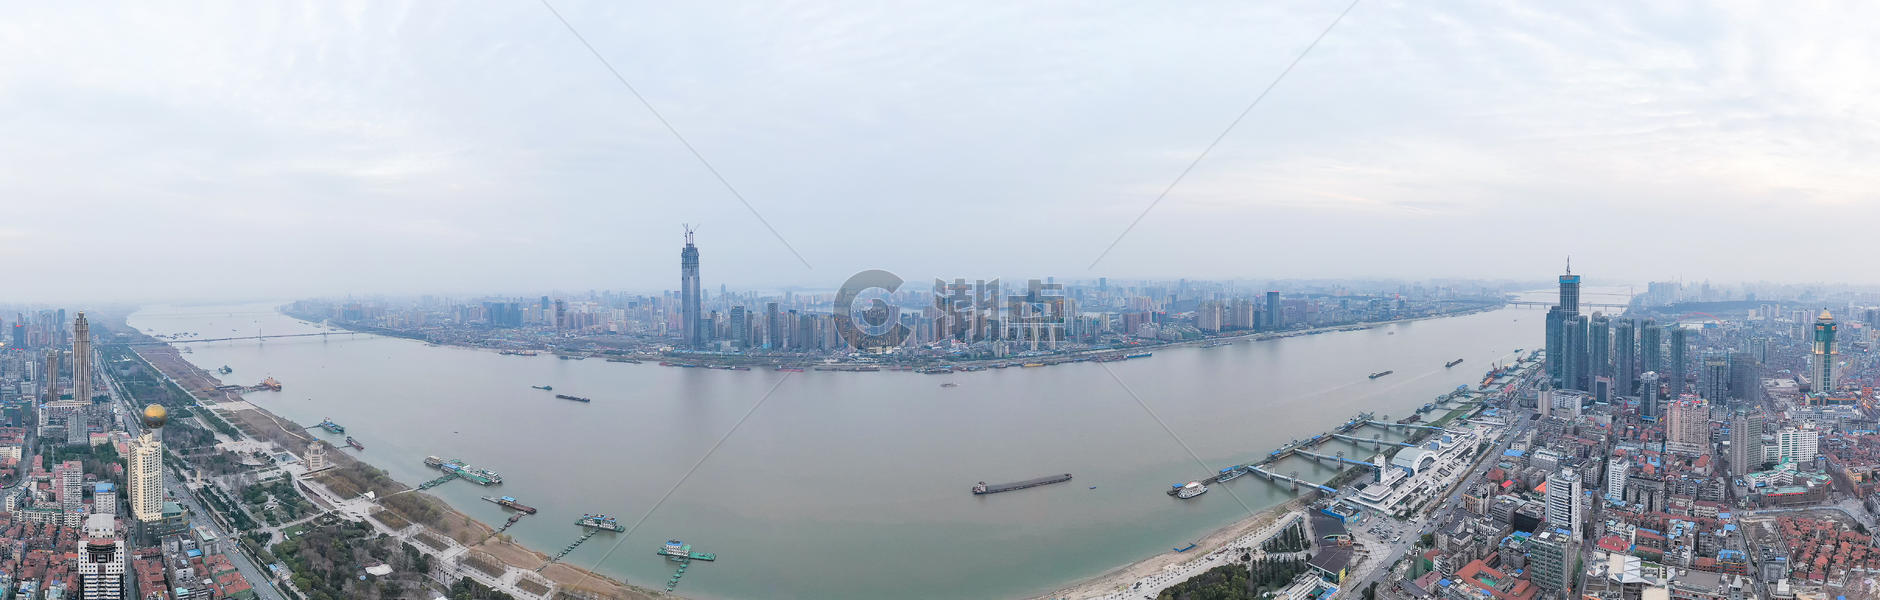 武汉长江两岸全景长片图片素材免费下载